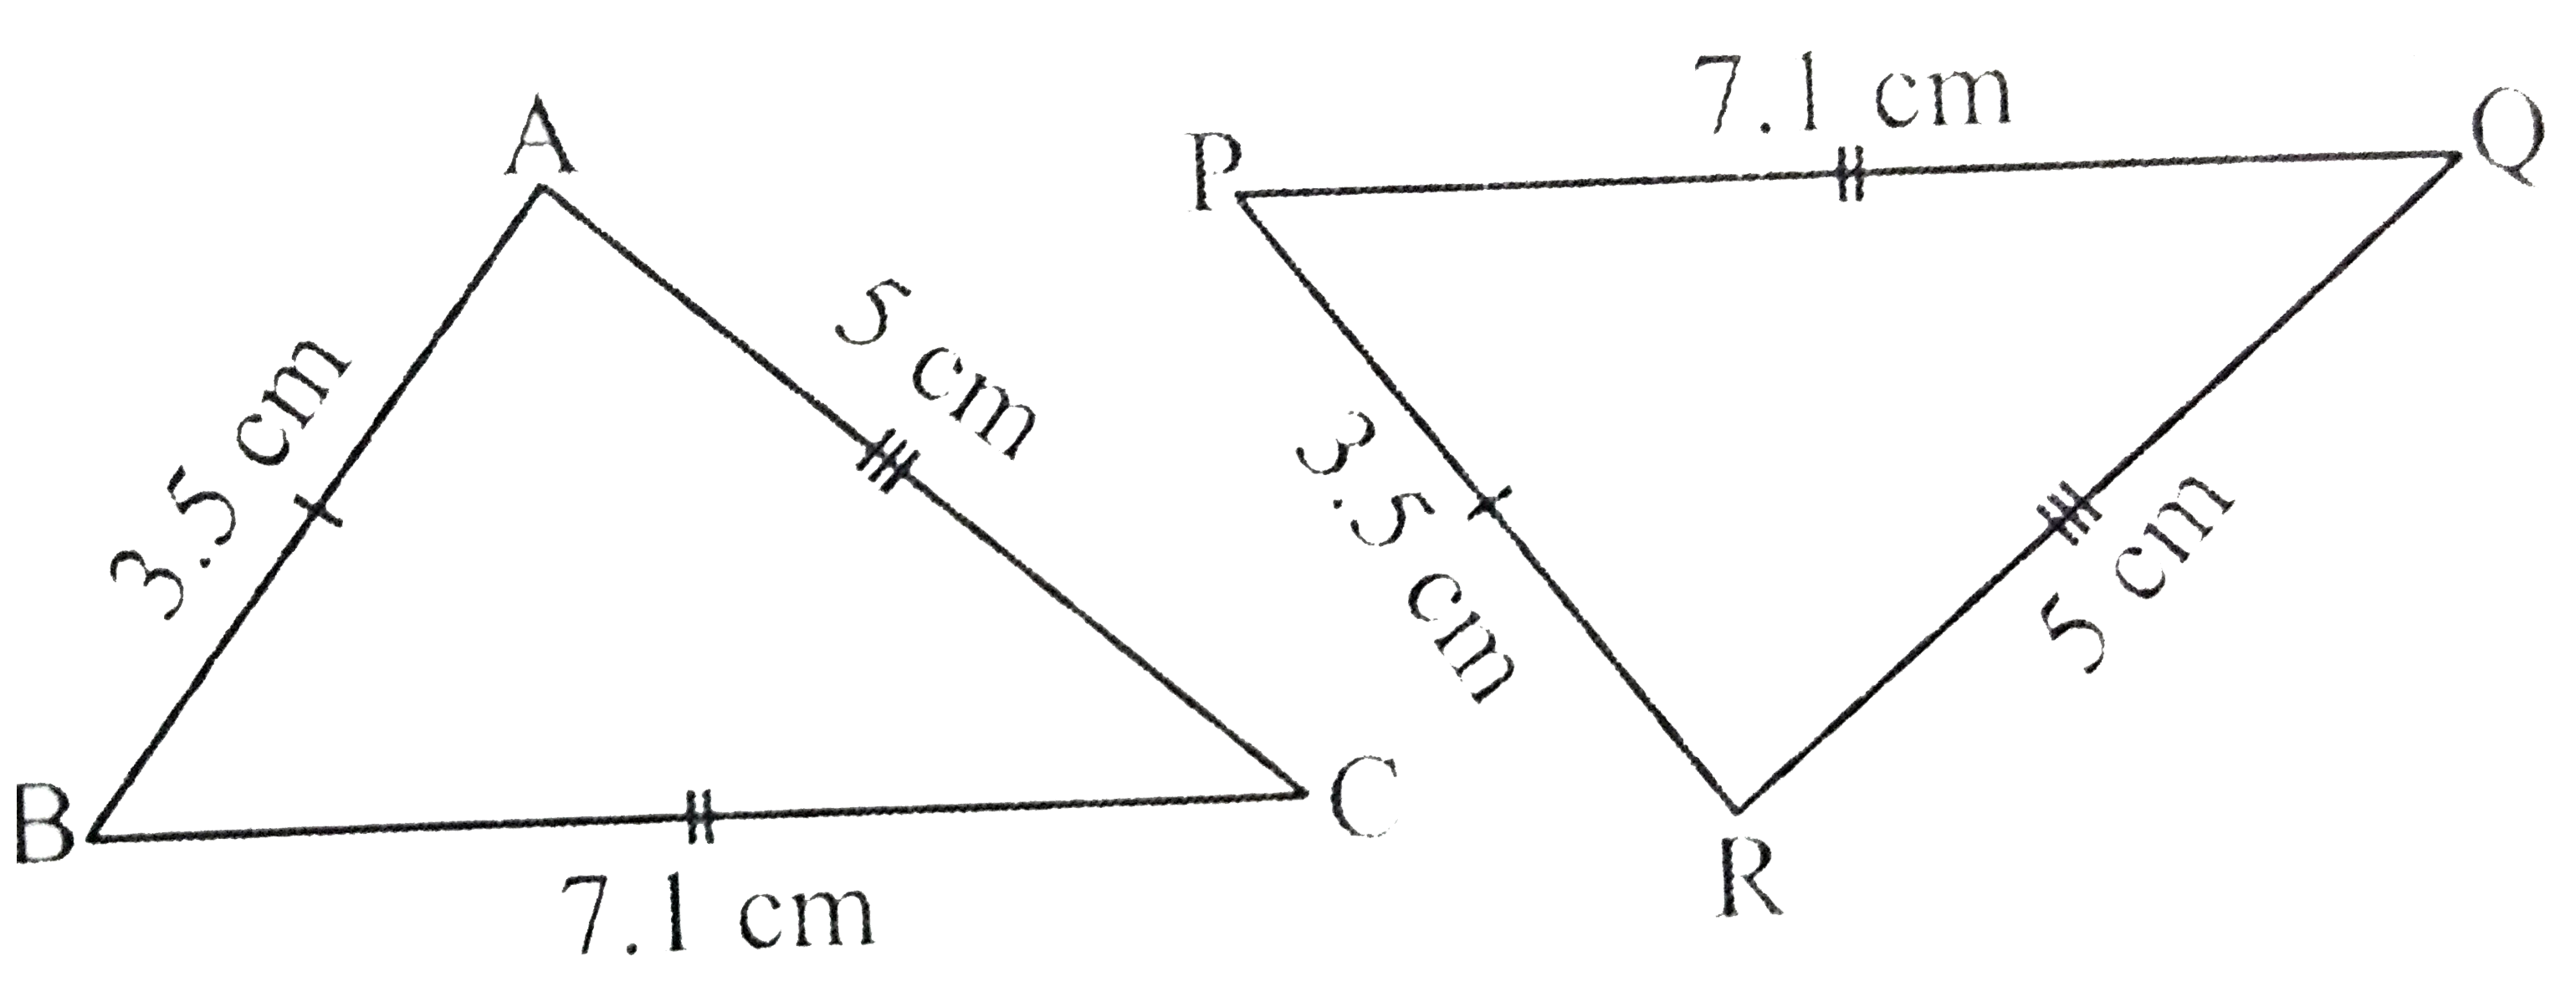 त्रिभुज ABC और PQR में AB=3.4cm,BC=7.1cm,AC=5cm,PQ=7.1cm, QR=5cm, और PR=3.5cm है (आकृति 7.1)!जांचिए की क्या दोनों, त्रिभुज सर्वांगसम है या नहीं? यदि हाँ, तो सुमेलन सम्बन्ध को सांकेतिक रूप में लिखिए!